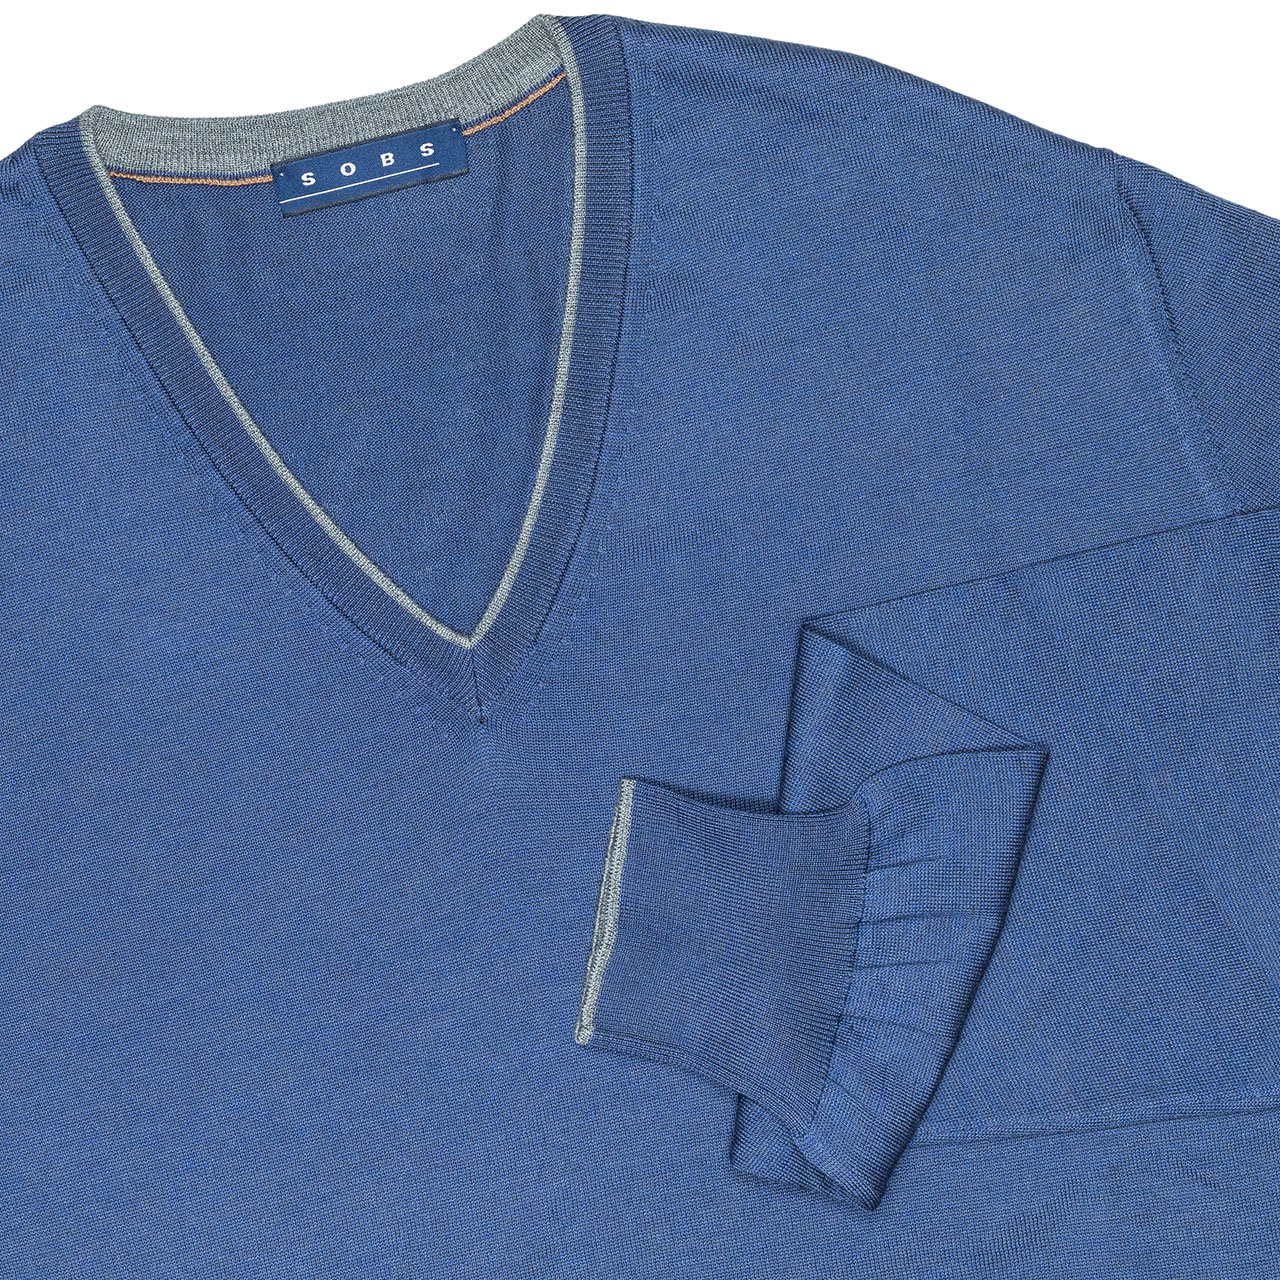 SOBS V-Kragenpullover in blau mit grauer Kante aus Seide/Baumwolle